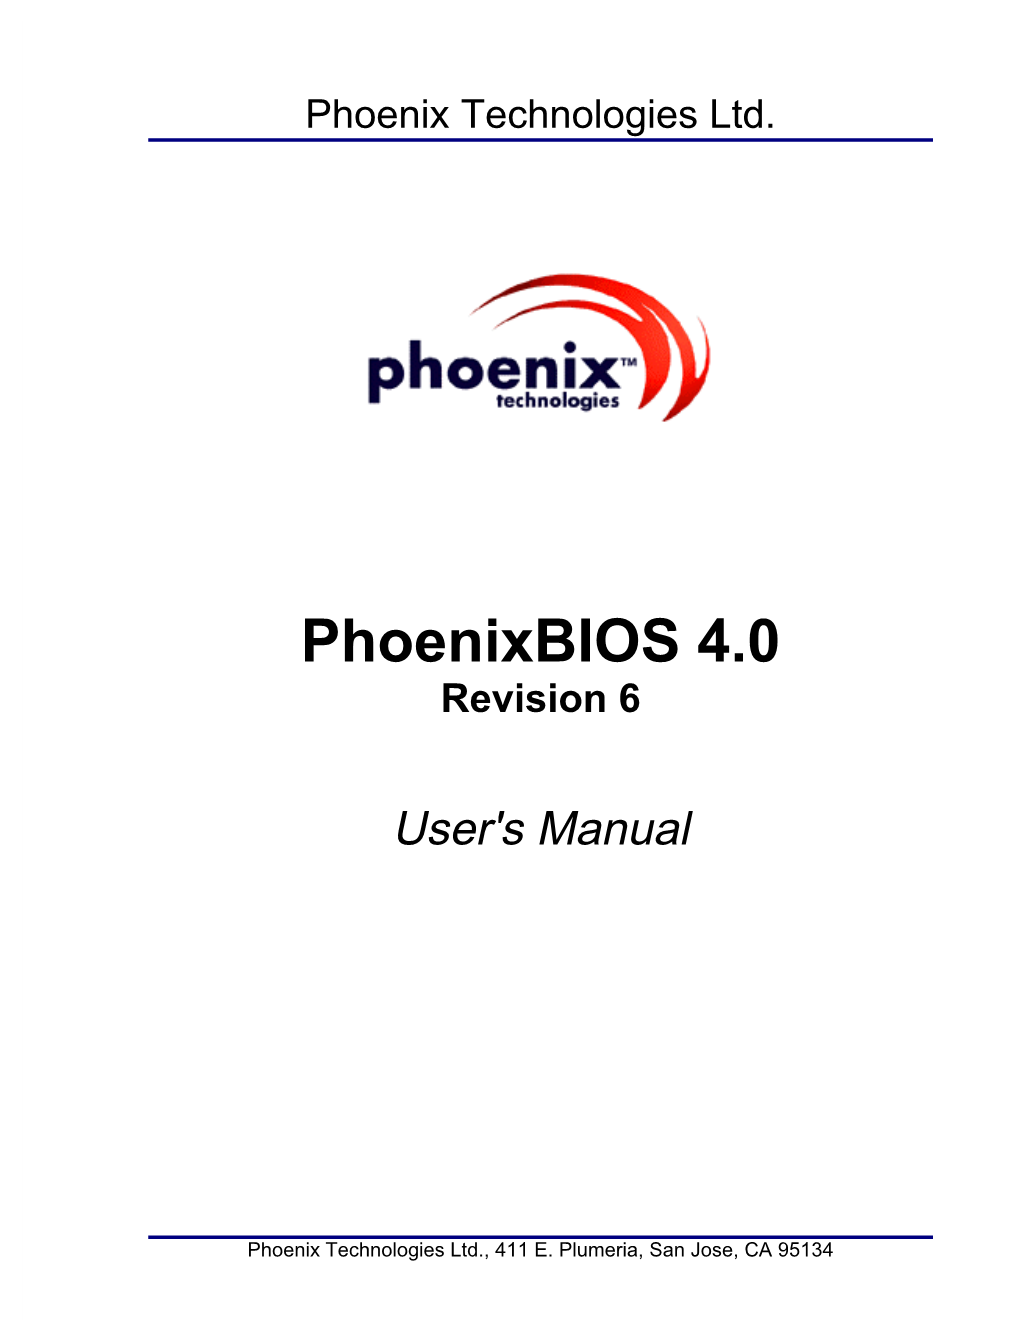 Phoenixbios 4.0 Revision 6